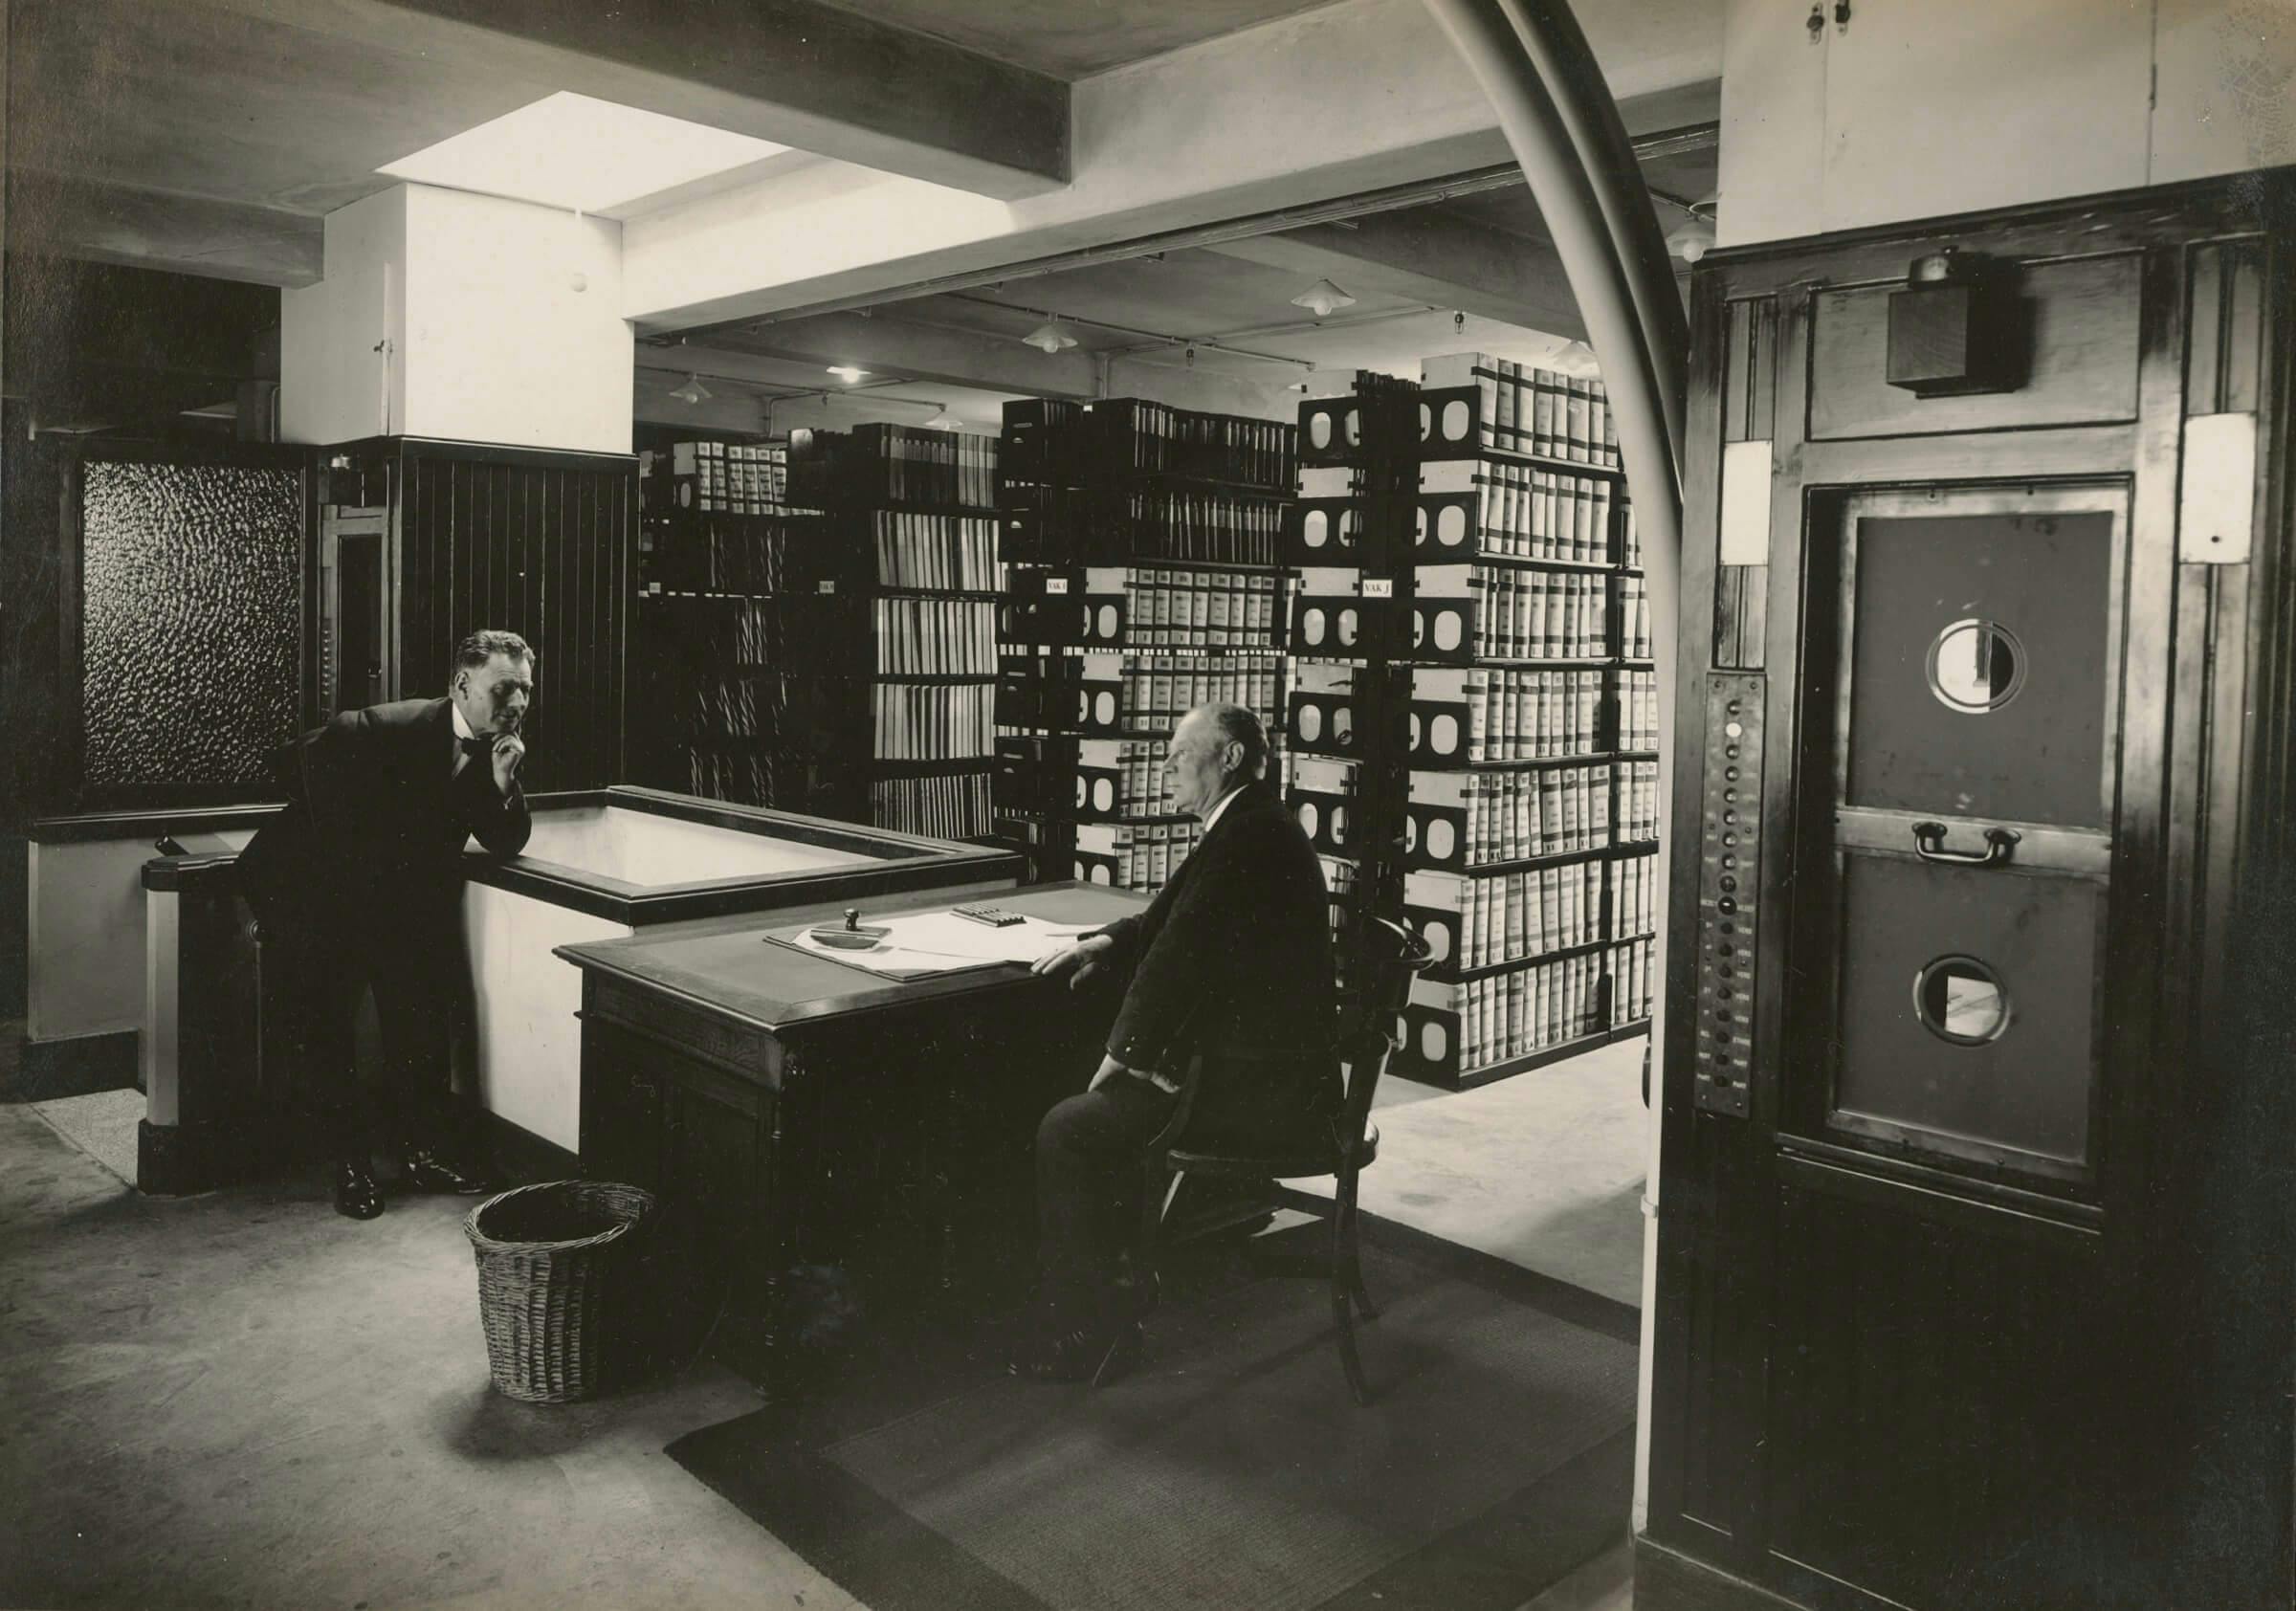 K.P.C de Bazel. Archive in the Nederlandse Handelmaatschappij office building, Amsterdam, 1920-1926. Collection Het Nieuwe Instituut, BAZE 1504